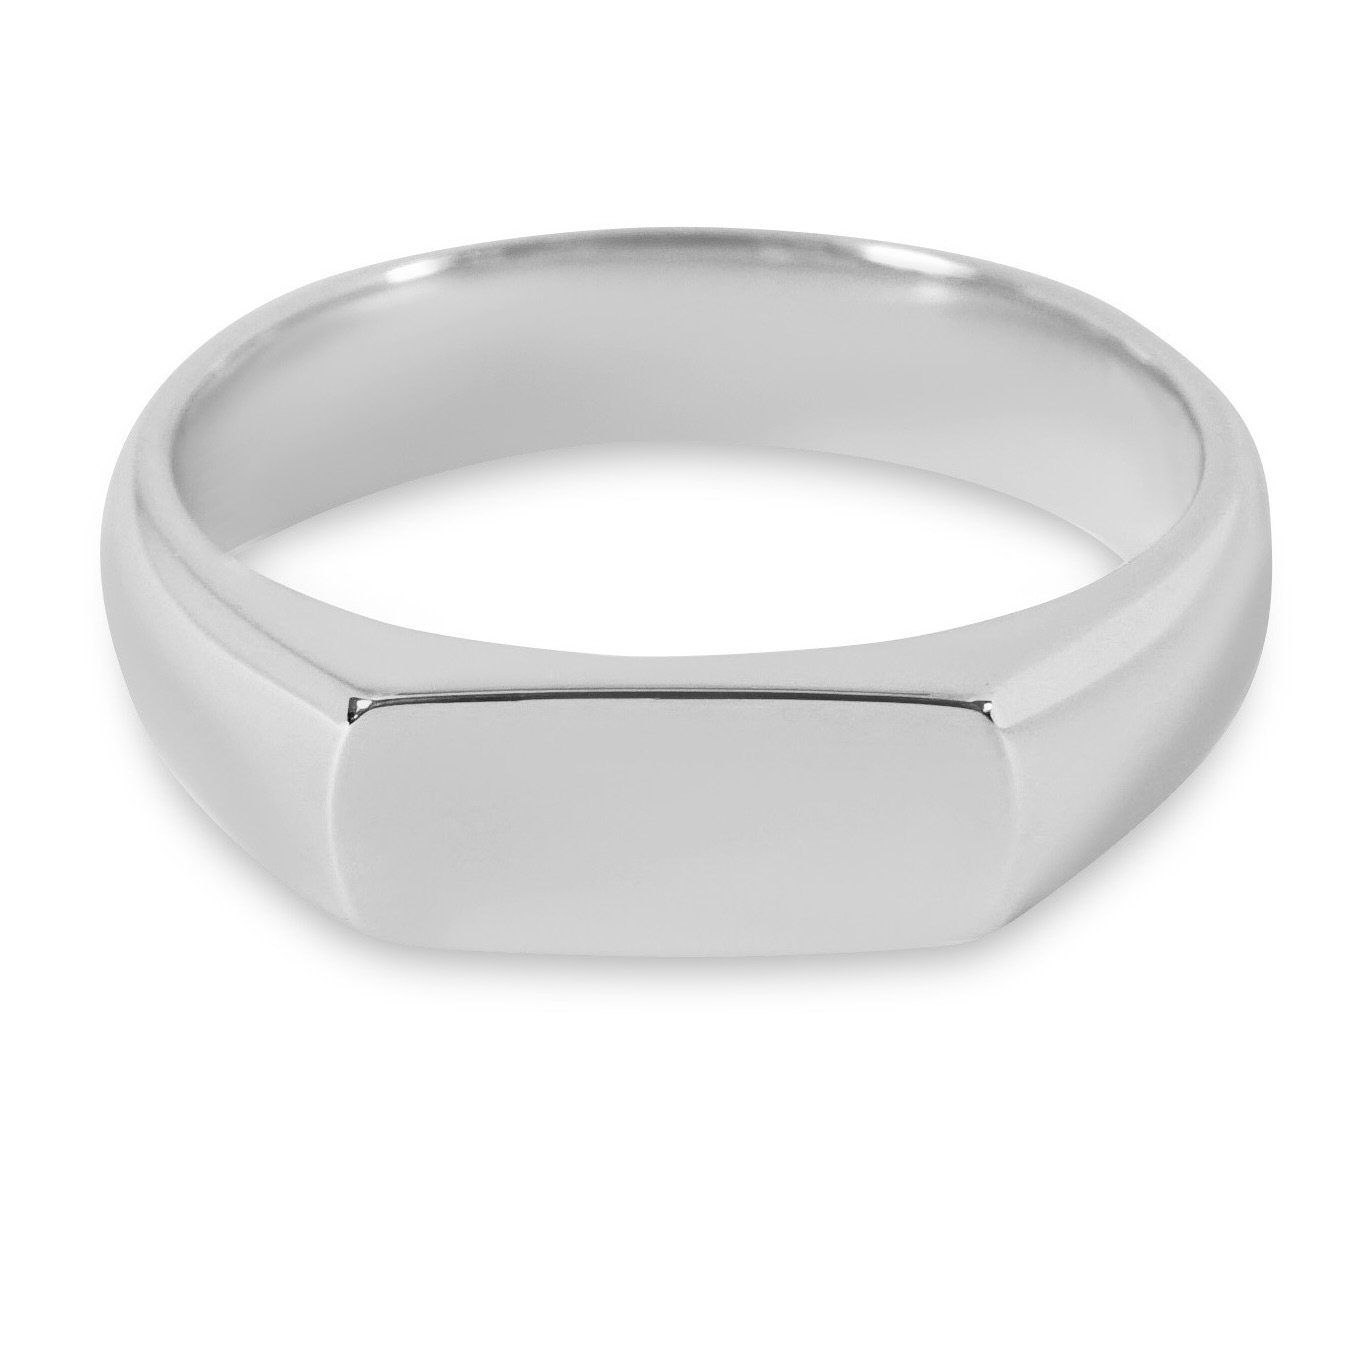 Sprezzi Fashion Siegelring Herren Ring Silber und Gold aus 925 Sterling Silber poliert, poliert, handgemacht, minimalistisch, für Gravur geeignet